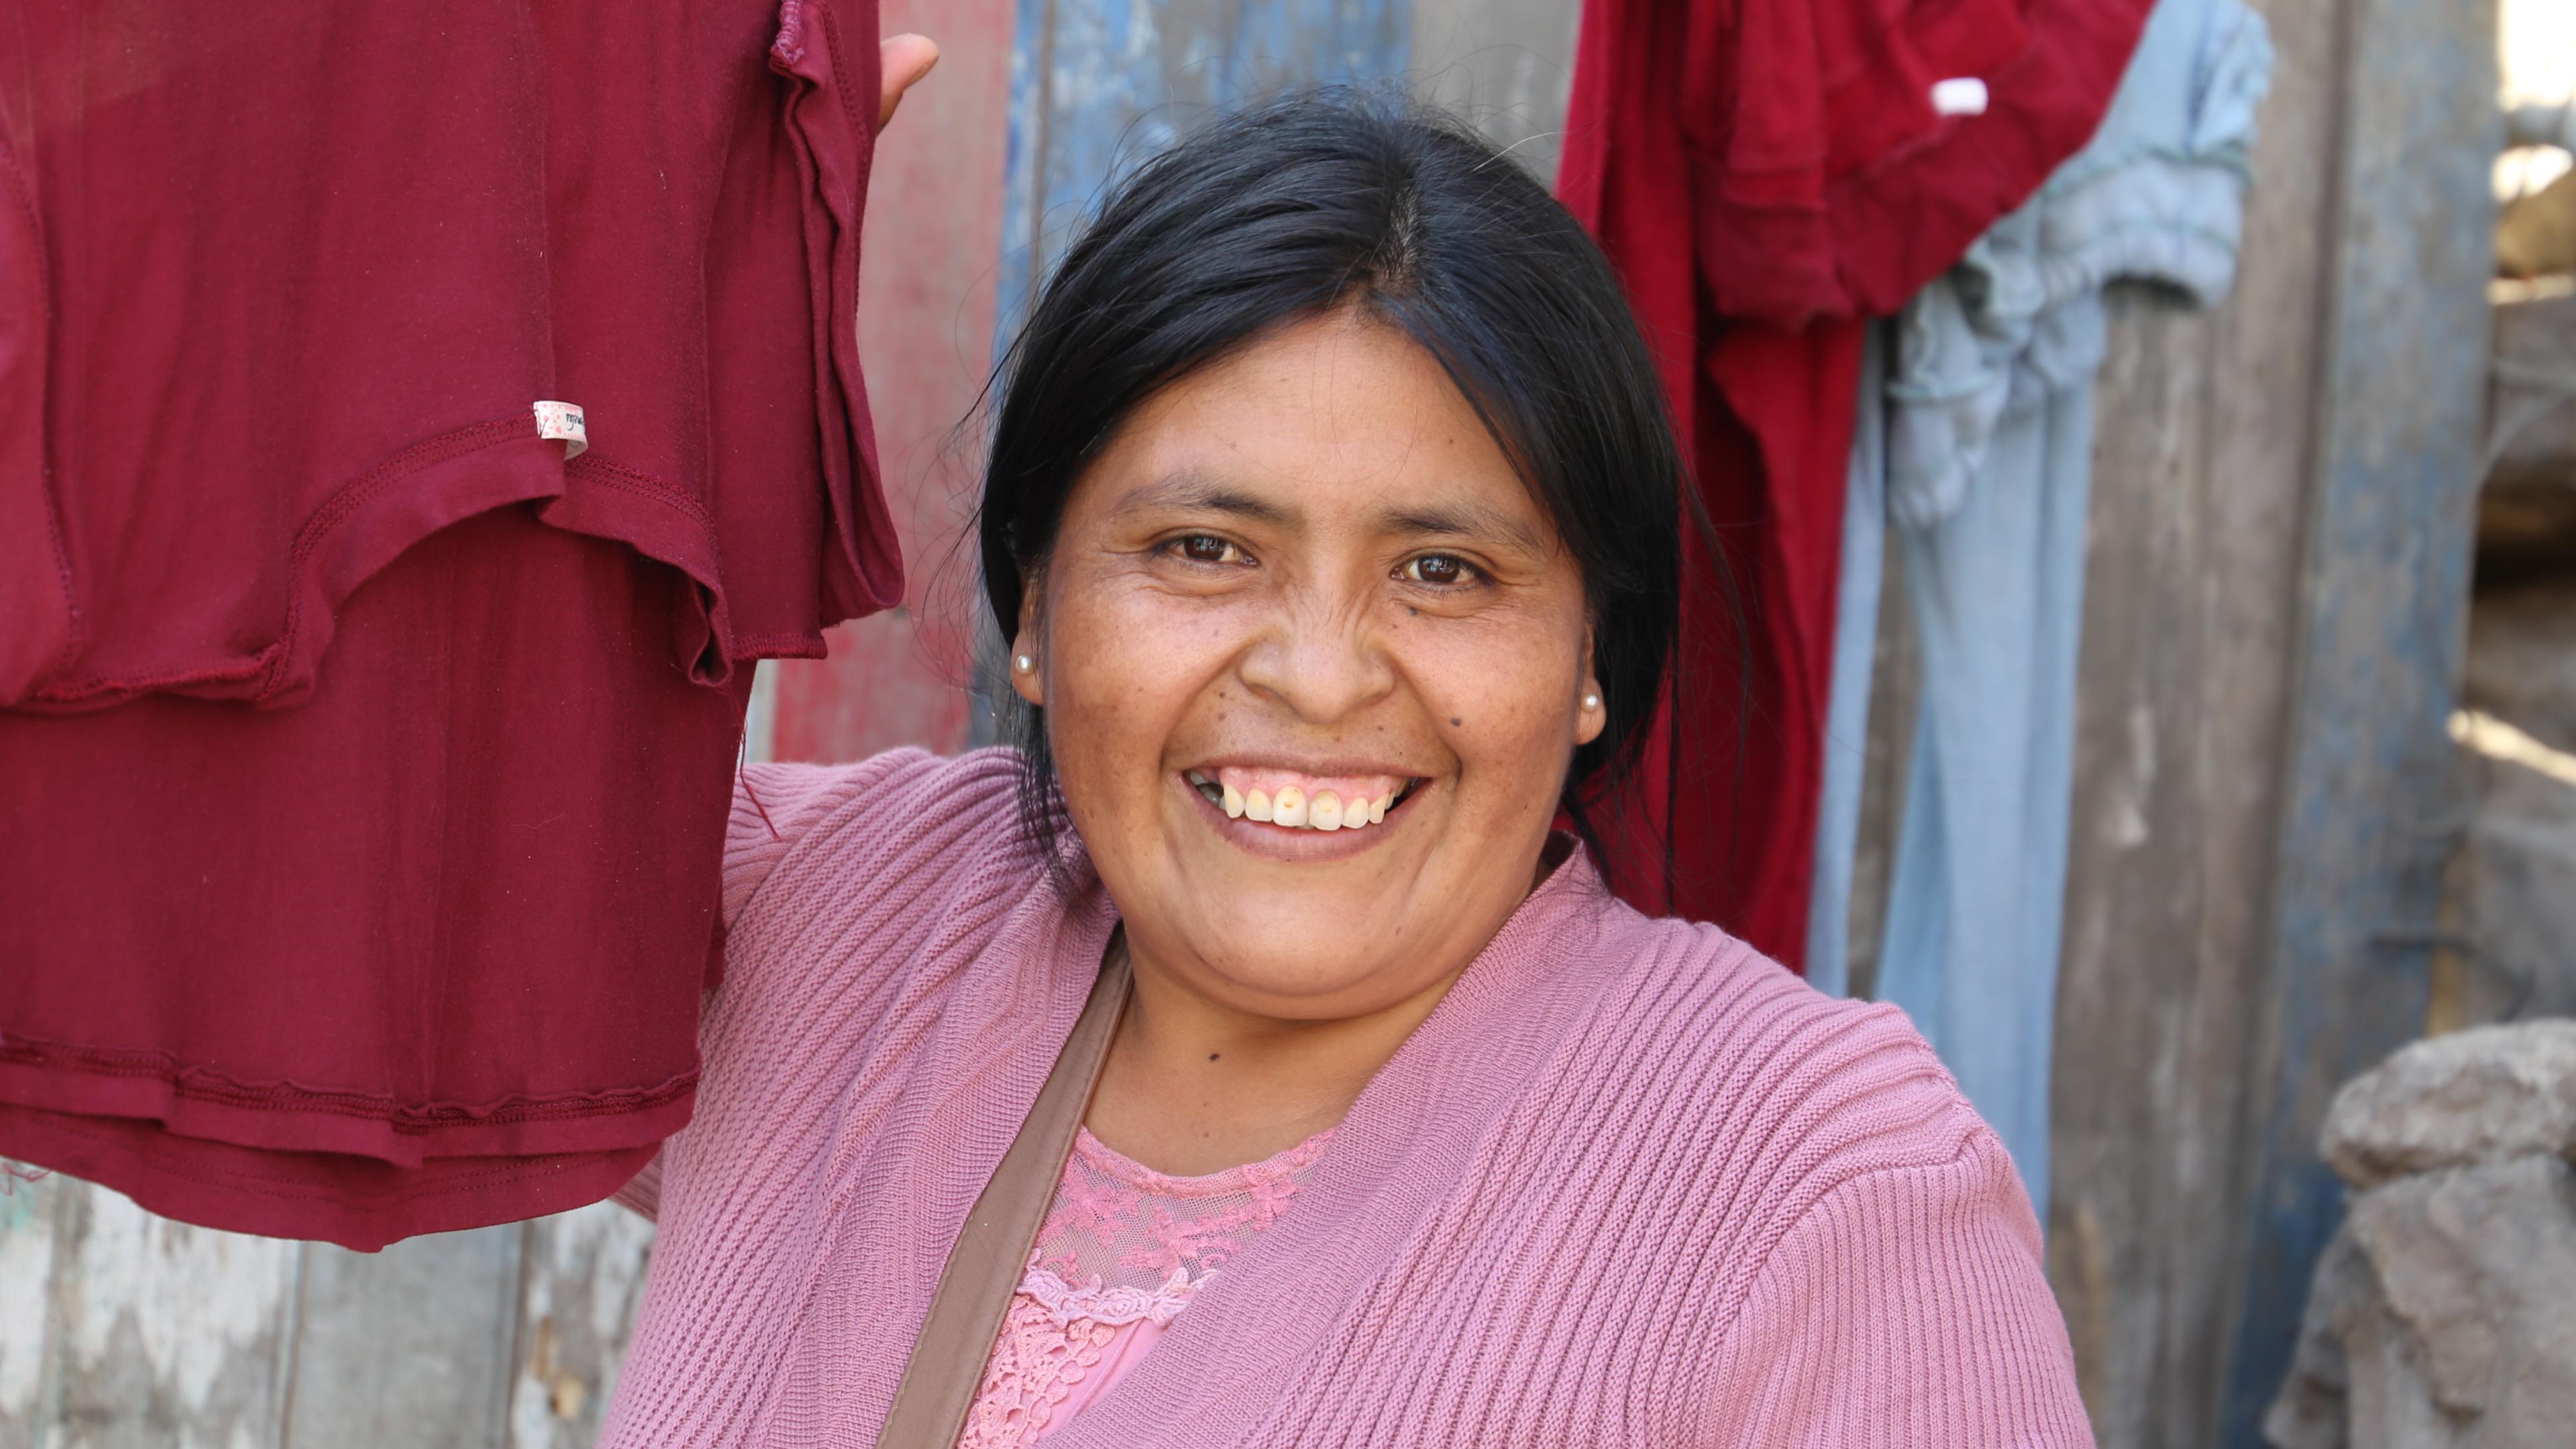 Peruanische Frau vor Wäscheleine mit roter Kleidung